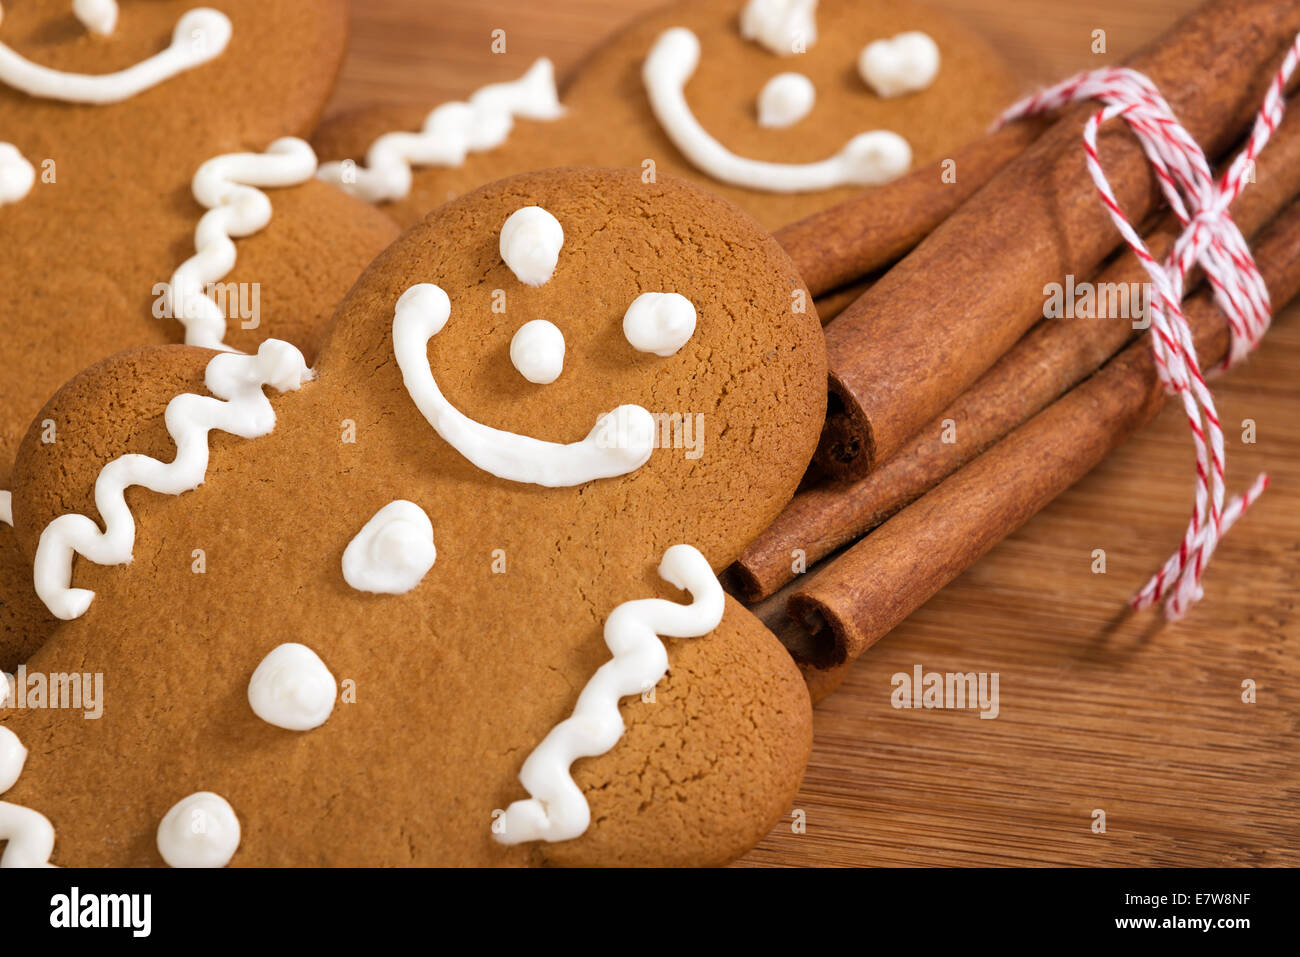 Des petits gingerbread man cookies avec des bâtons de cannelle sur planche à découper en bois Banque D'Images